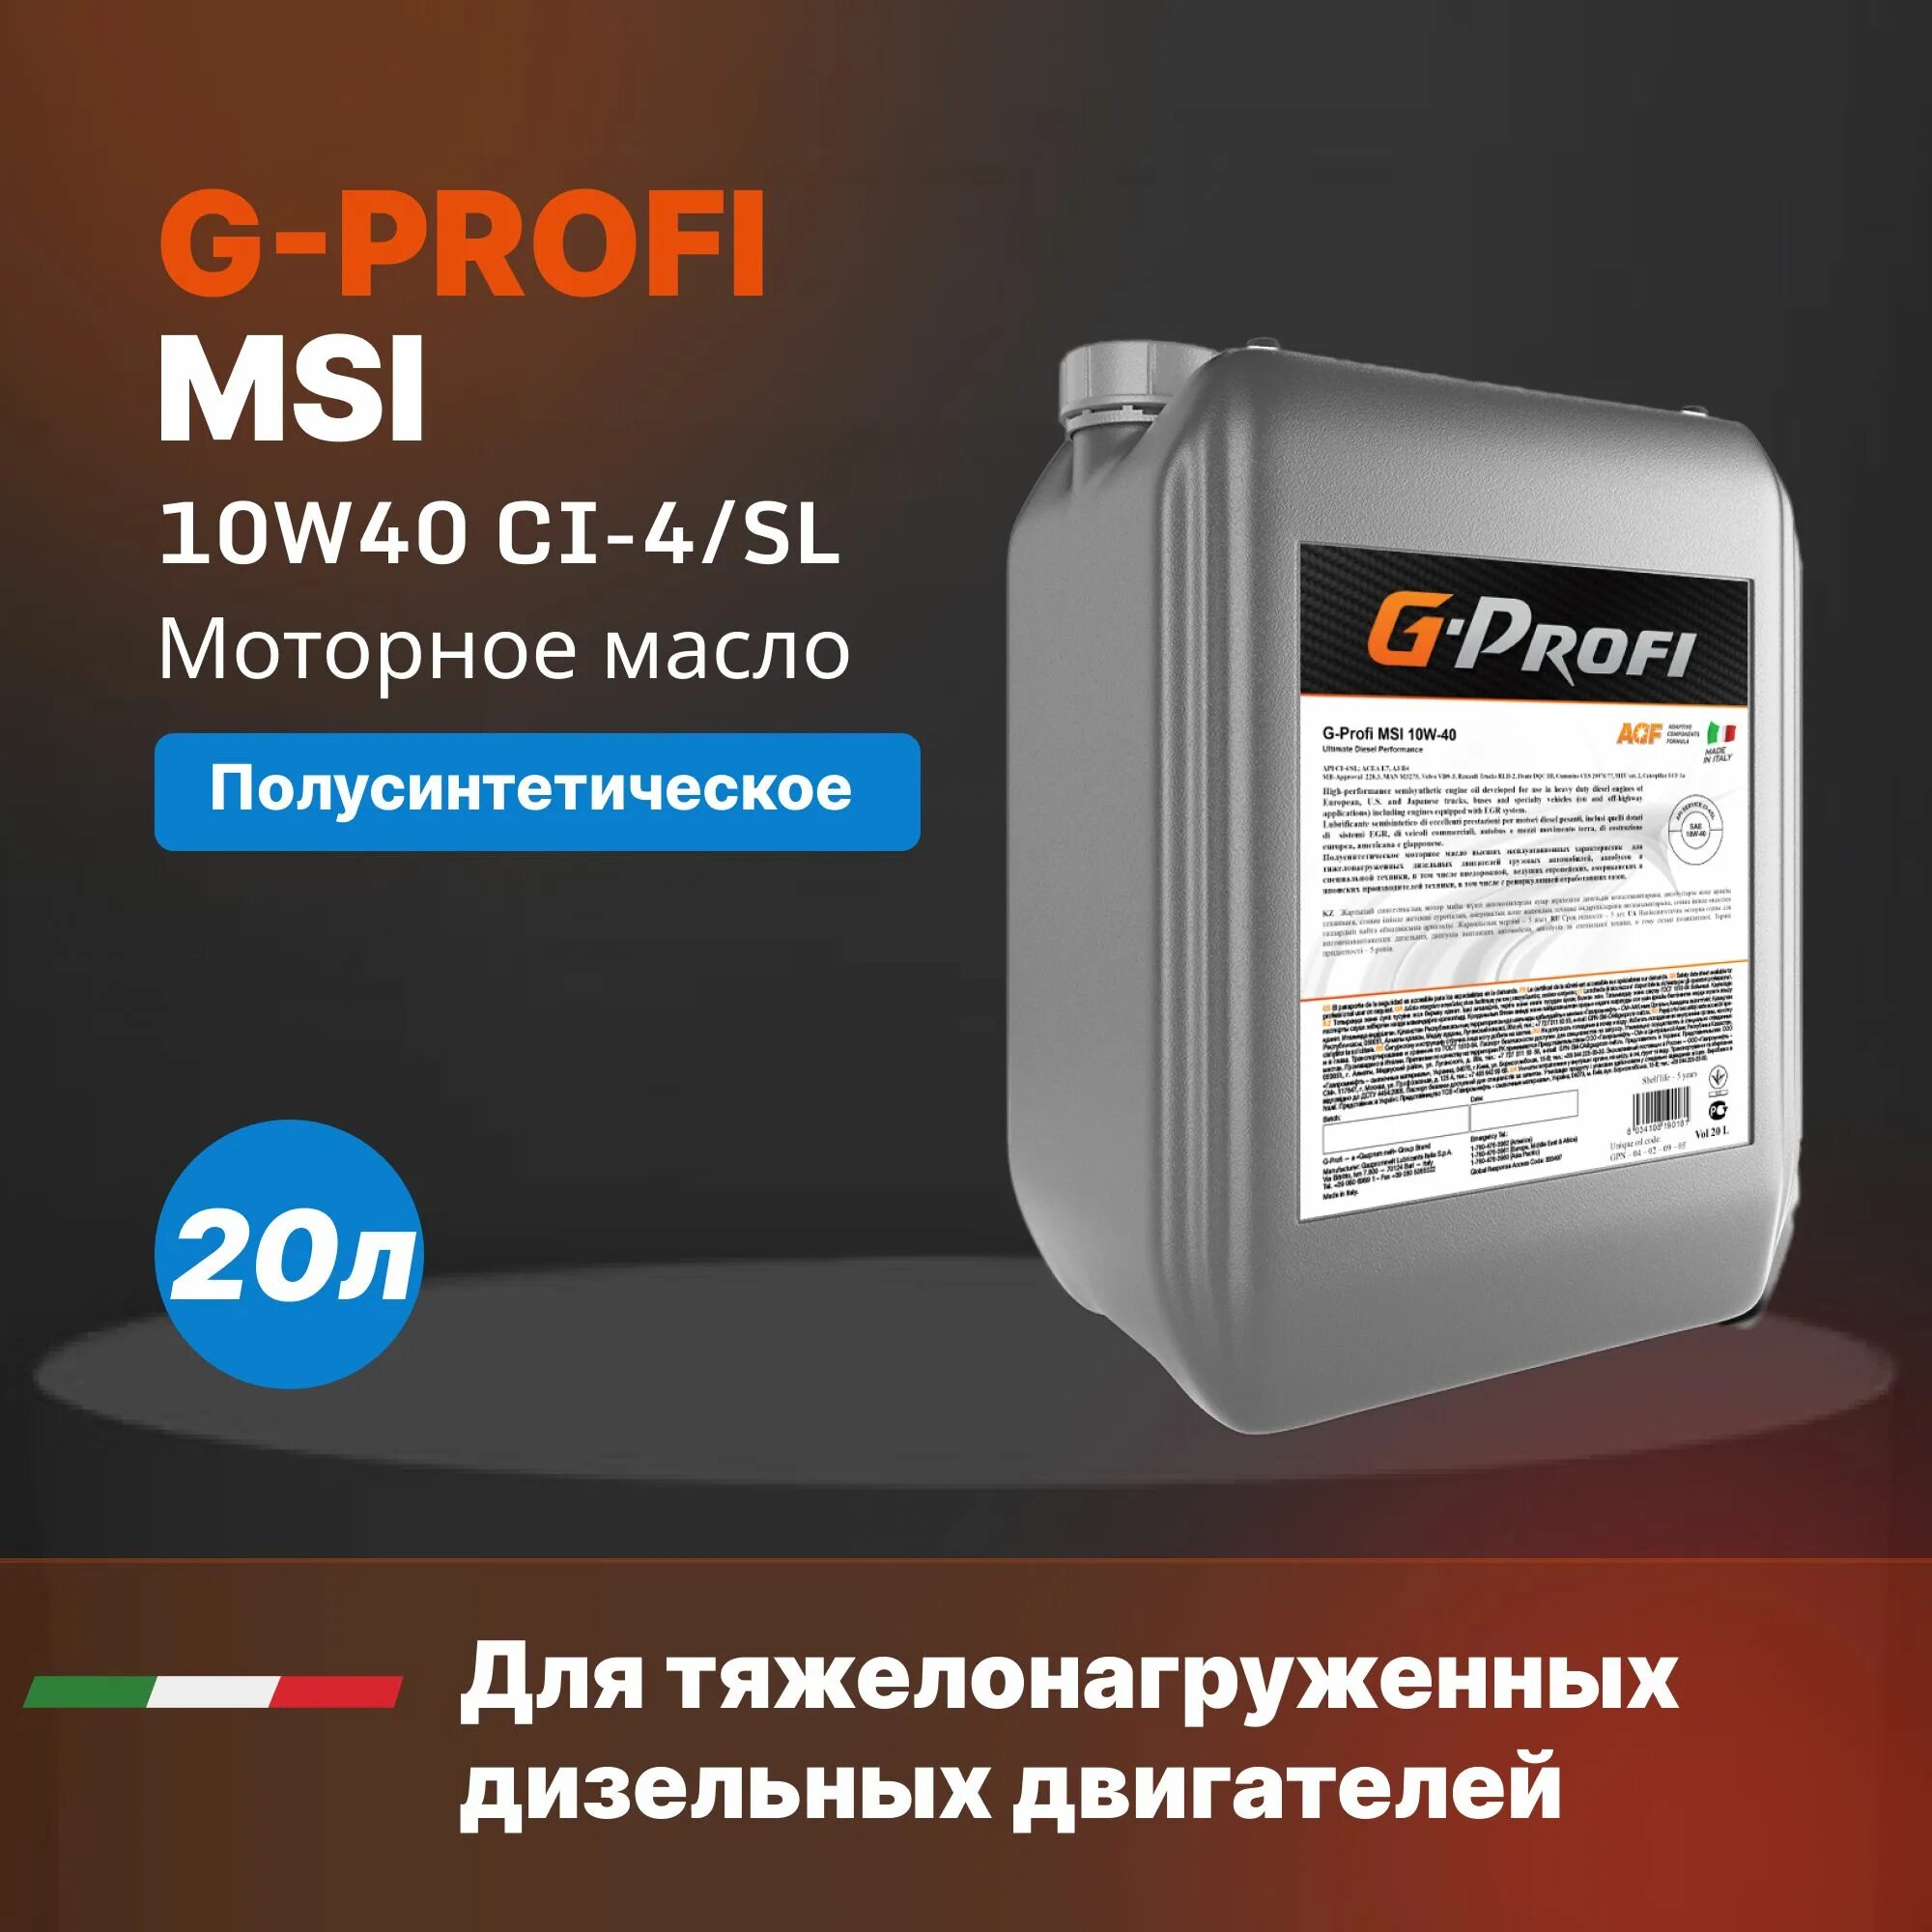 G Profi MSI 10w 40. G-Profi MSI 10w-40 205л. Масло g-Profi MSI 10w40 (205л/179 кг) весовой. G-Profi MSI 10w-40 20л. Масло g profi 10w40